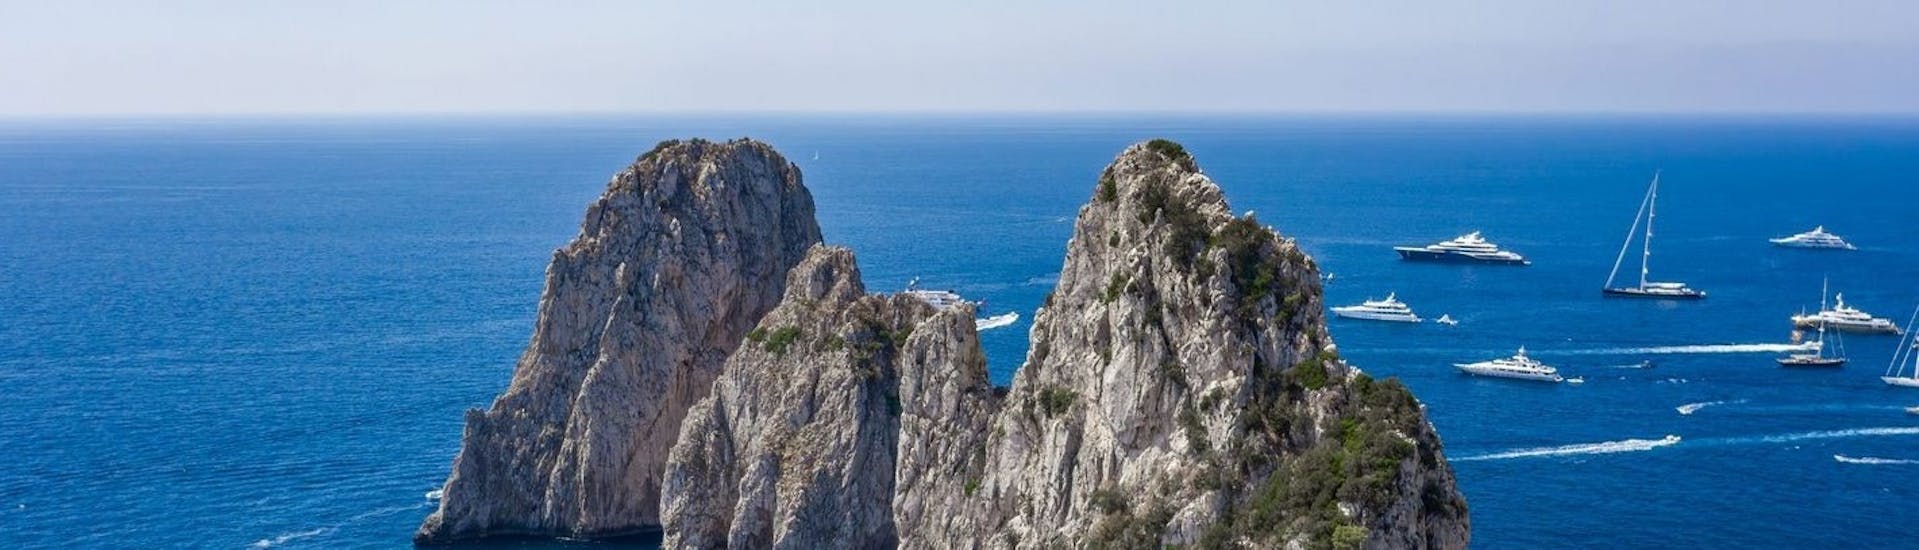 Vista de los Faraglioni di Capri que podrás admirar durante el Paseo en Barco desde Capri alrededor de la isla y hasta la Gruta Azul.